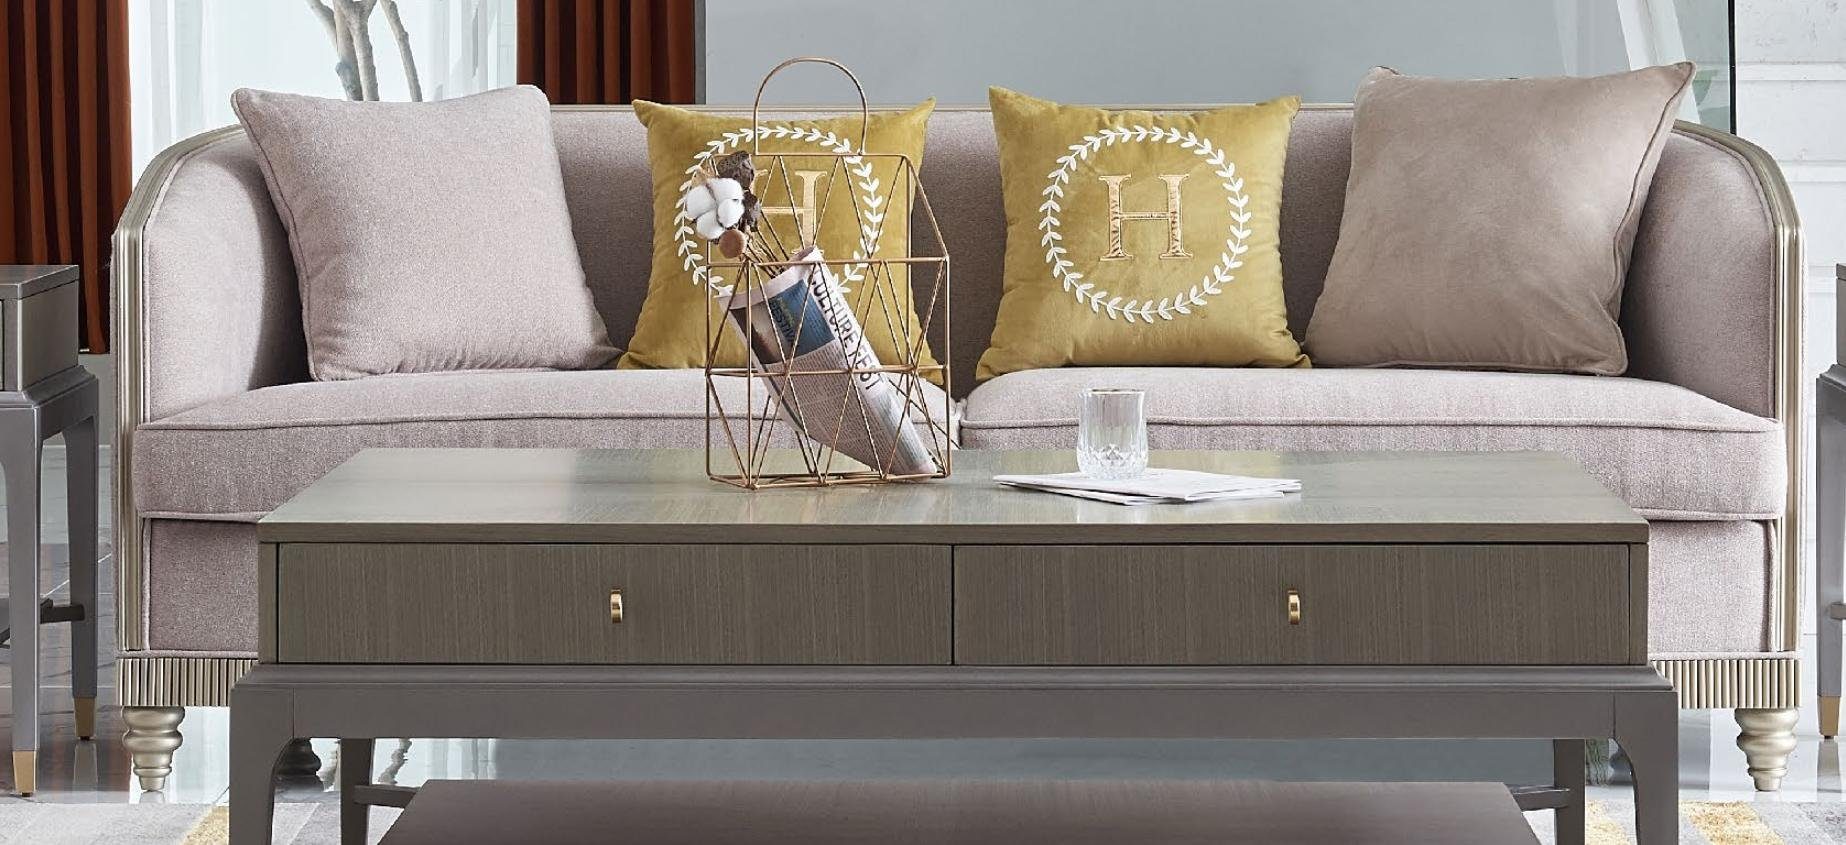 JVmoebel Sofa Textil Dreisitzer moderne Couch Neu, in 3-er Europe beige Made Polstermöbel